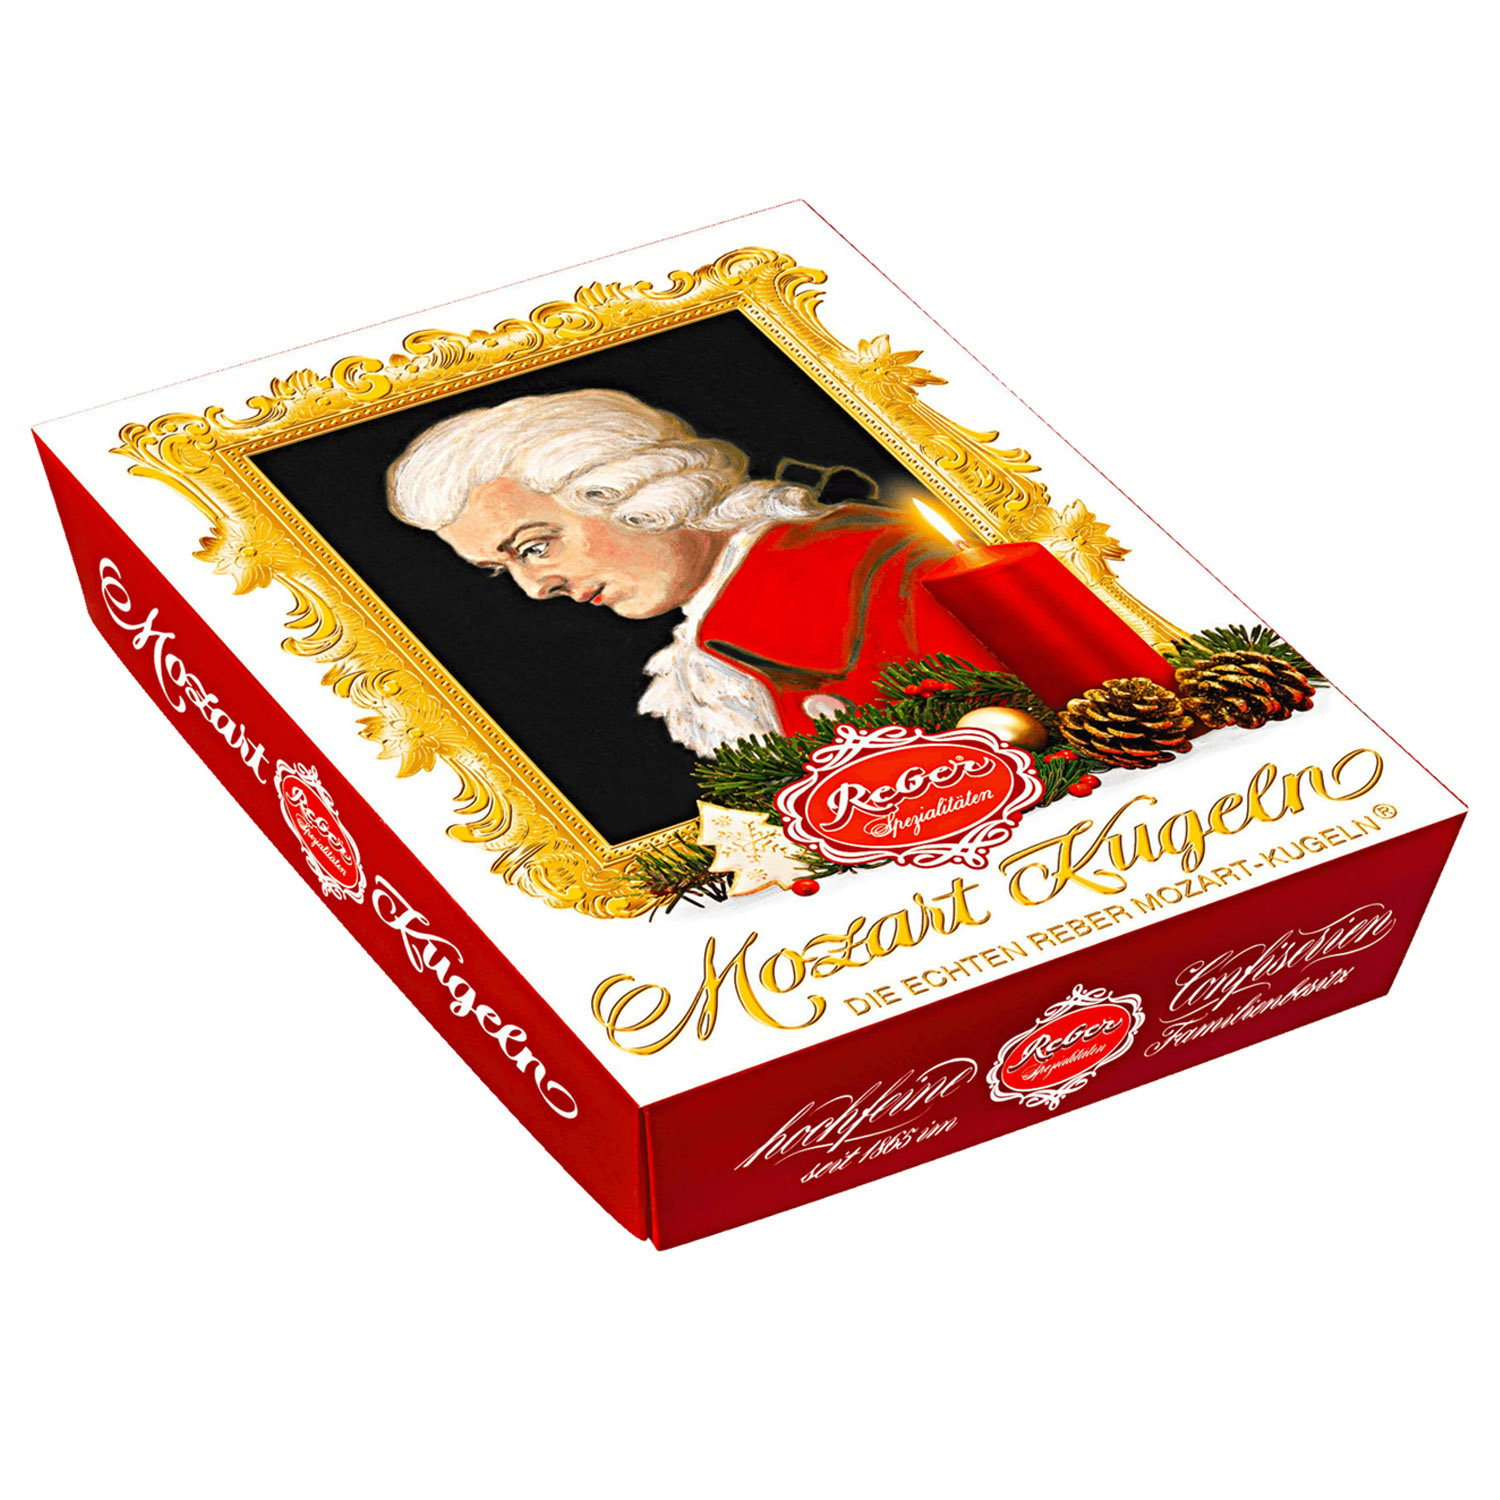 Цукерки шоколадні Reber Mozart Kugeln, новорічні, 240 г - фото 1